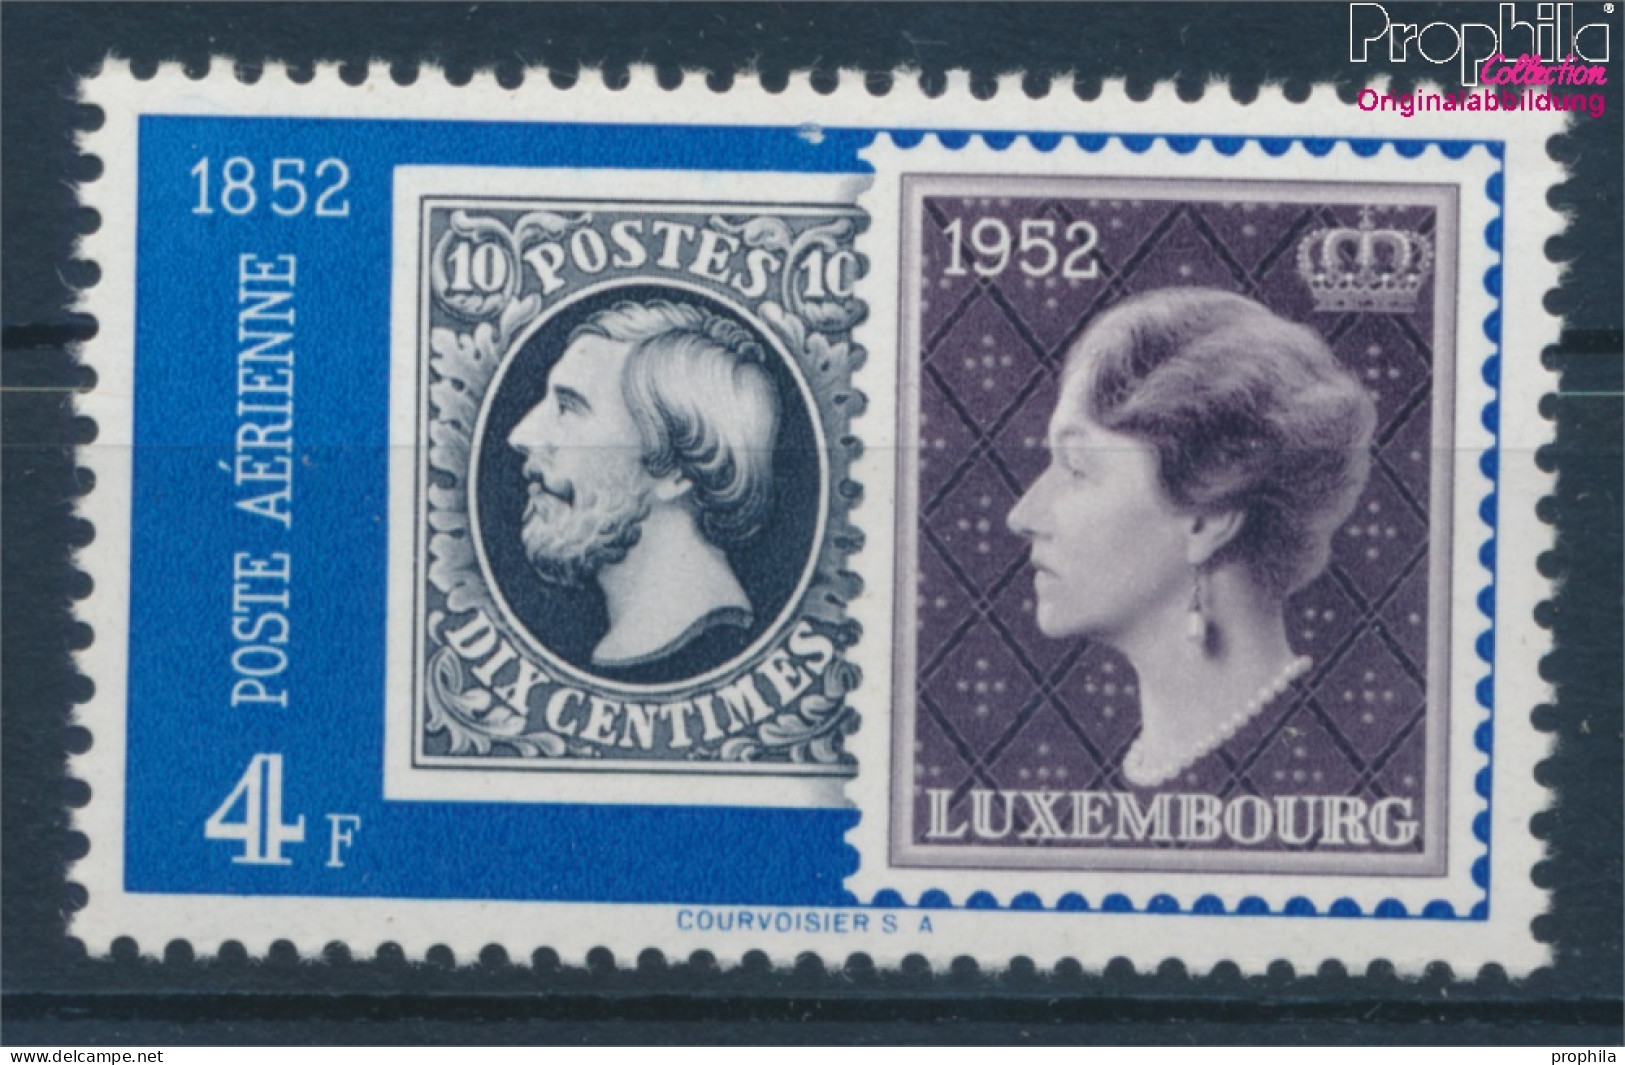 Luxemburg 492 Postfrisch 1952 Philatelie (10363181 - Nuevos